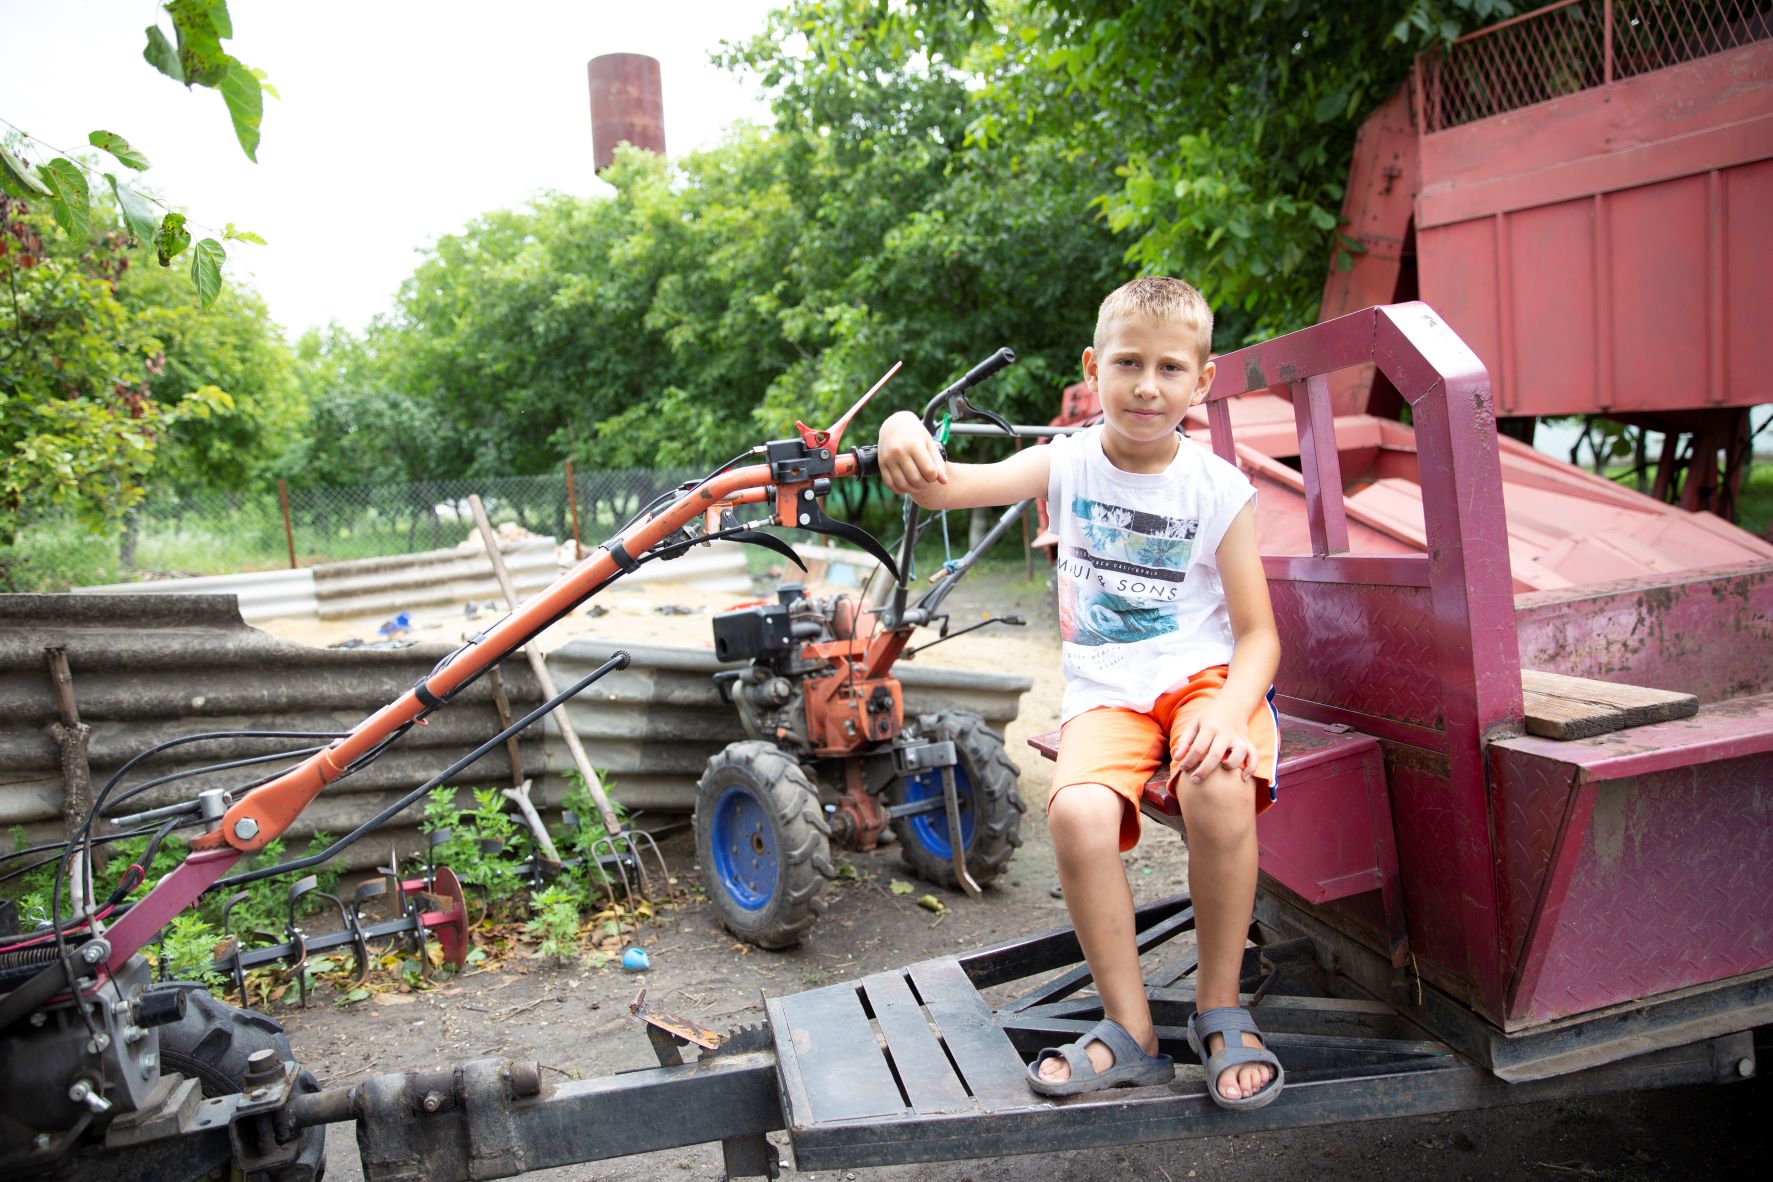 A boy in Moldova sitting on farming equipment